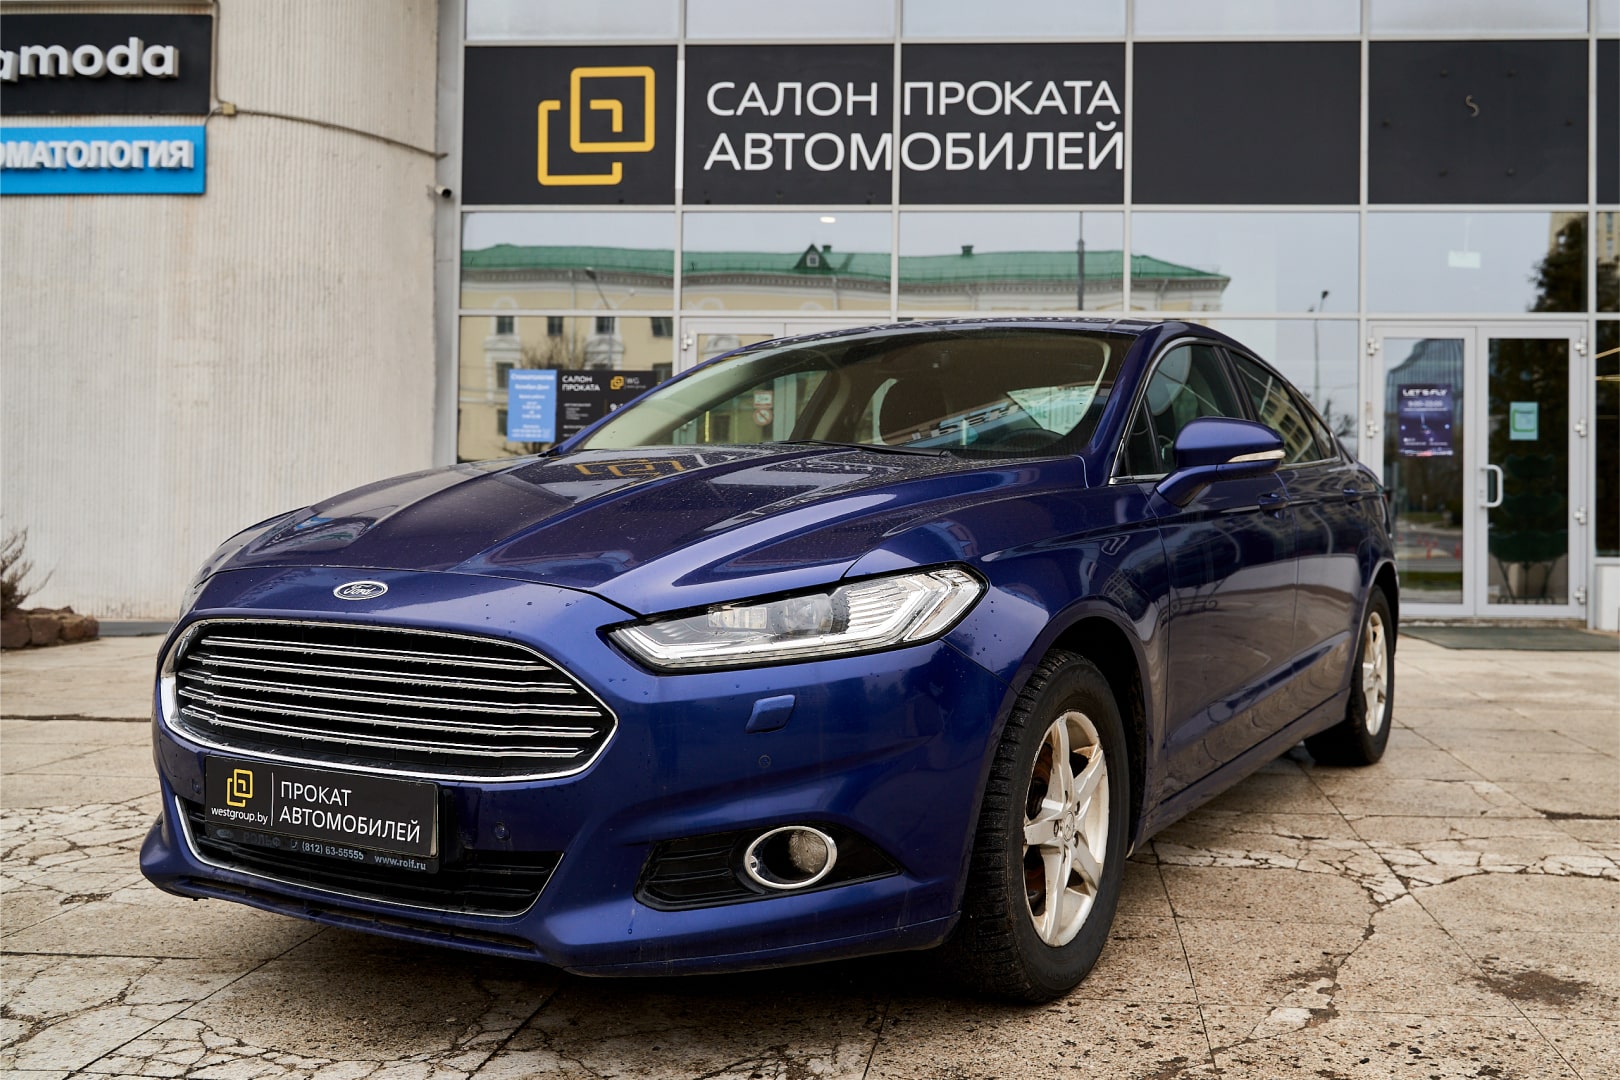 Аренда  Ford Mondeo Titanium Blue  2 класса 2017 года в городе Минск от 49 $/сутки,  двигатель: Бензин , объем 2.0 литров, КАСКО (Мультидрайв), без водителя, вид 1 - West Group